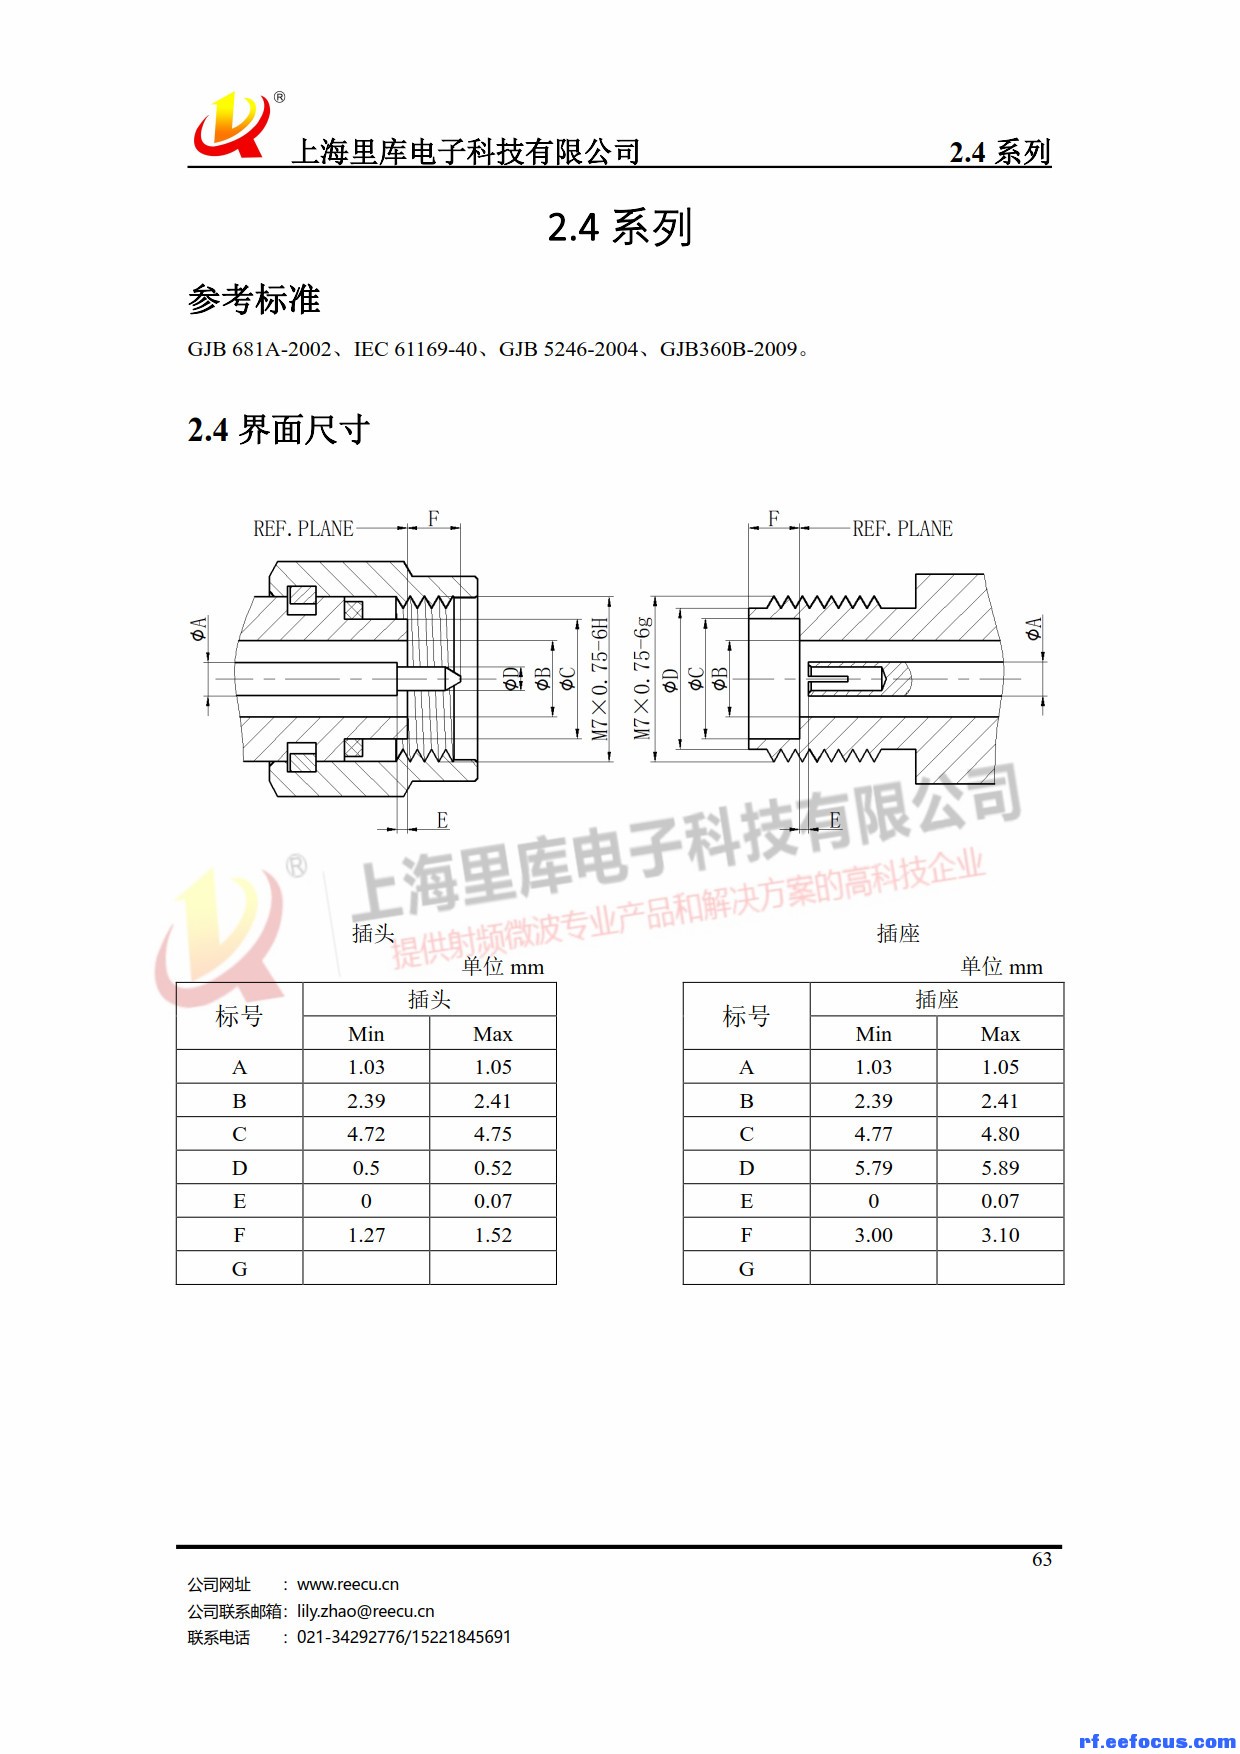 连接器产品手册-里库电子_63.jpg